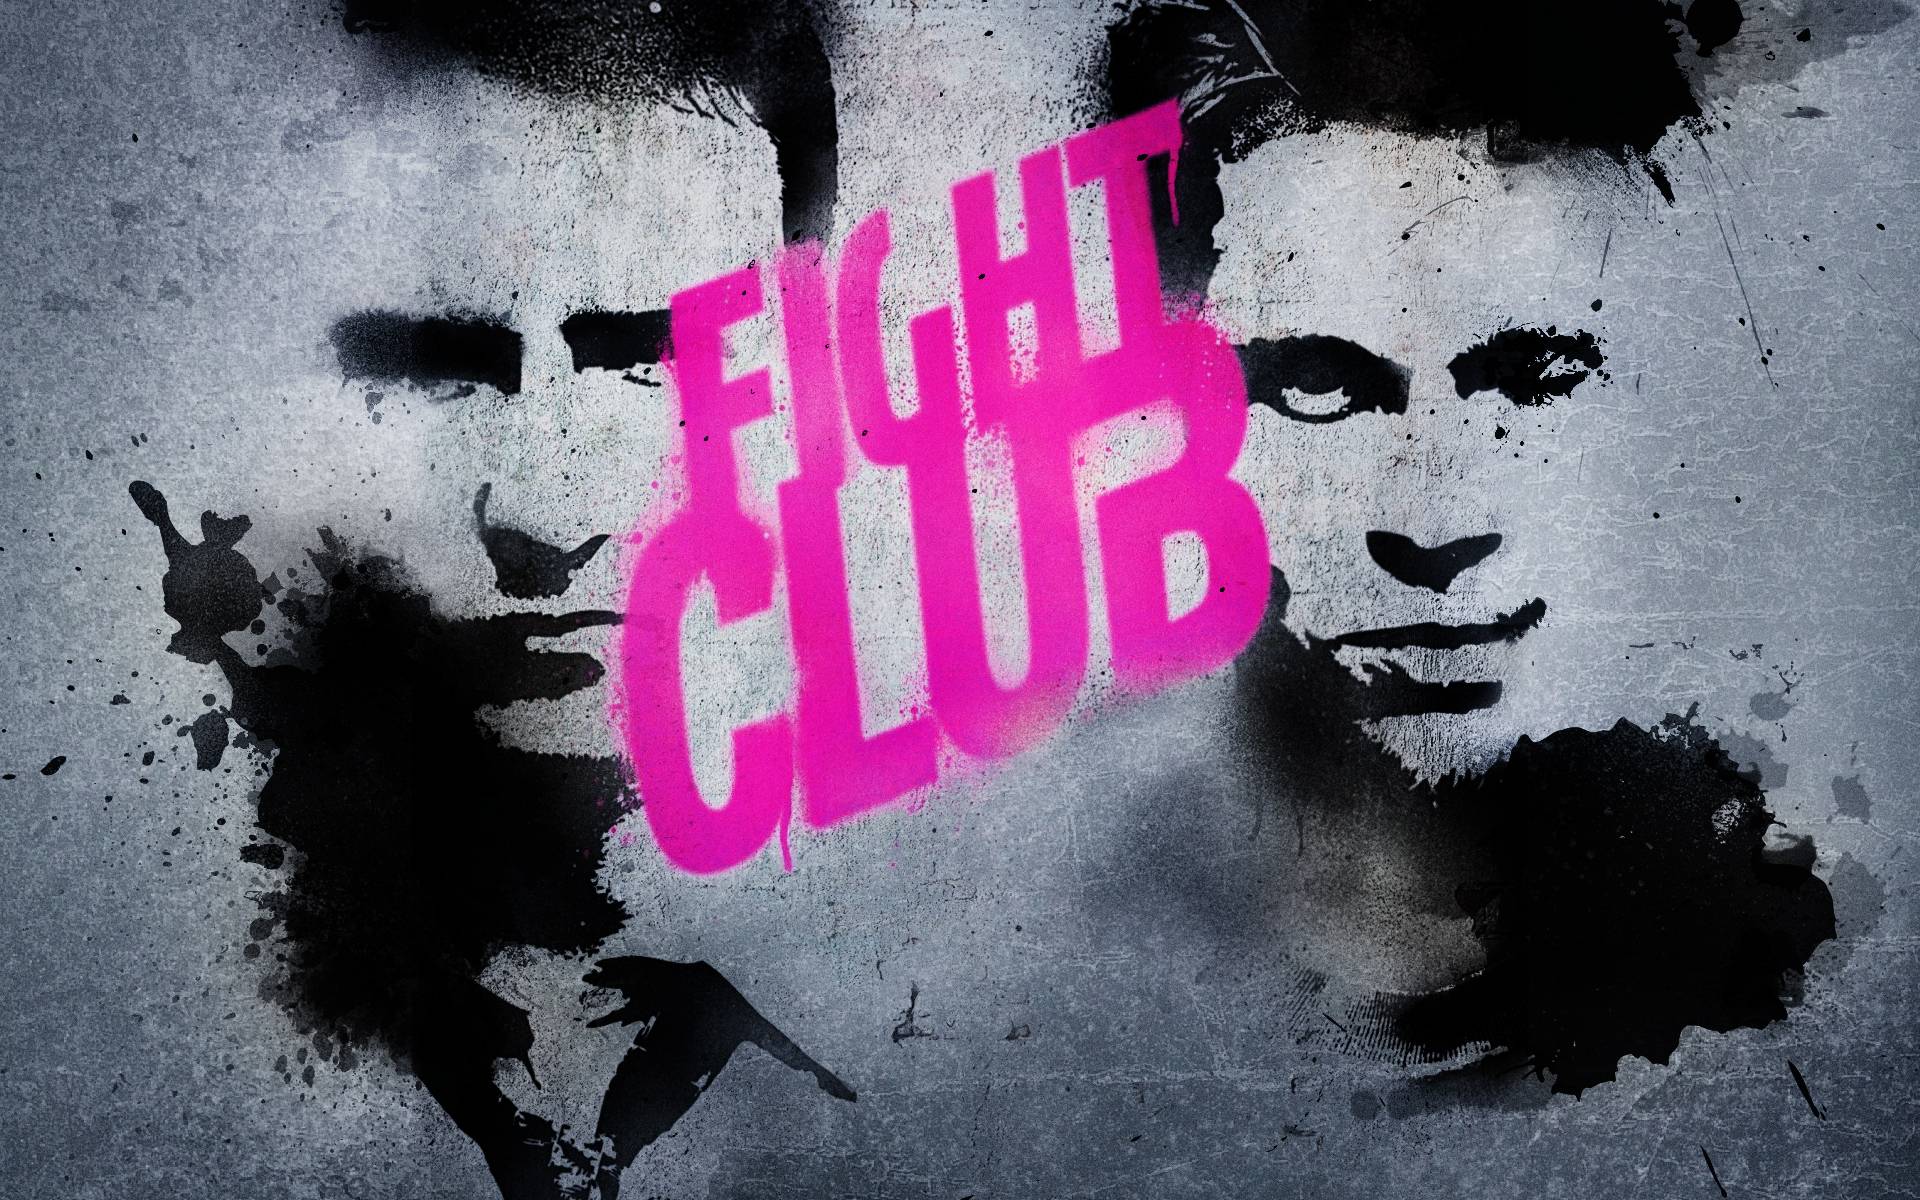 Fight Club wallpaper. HD Windows Wallpaper